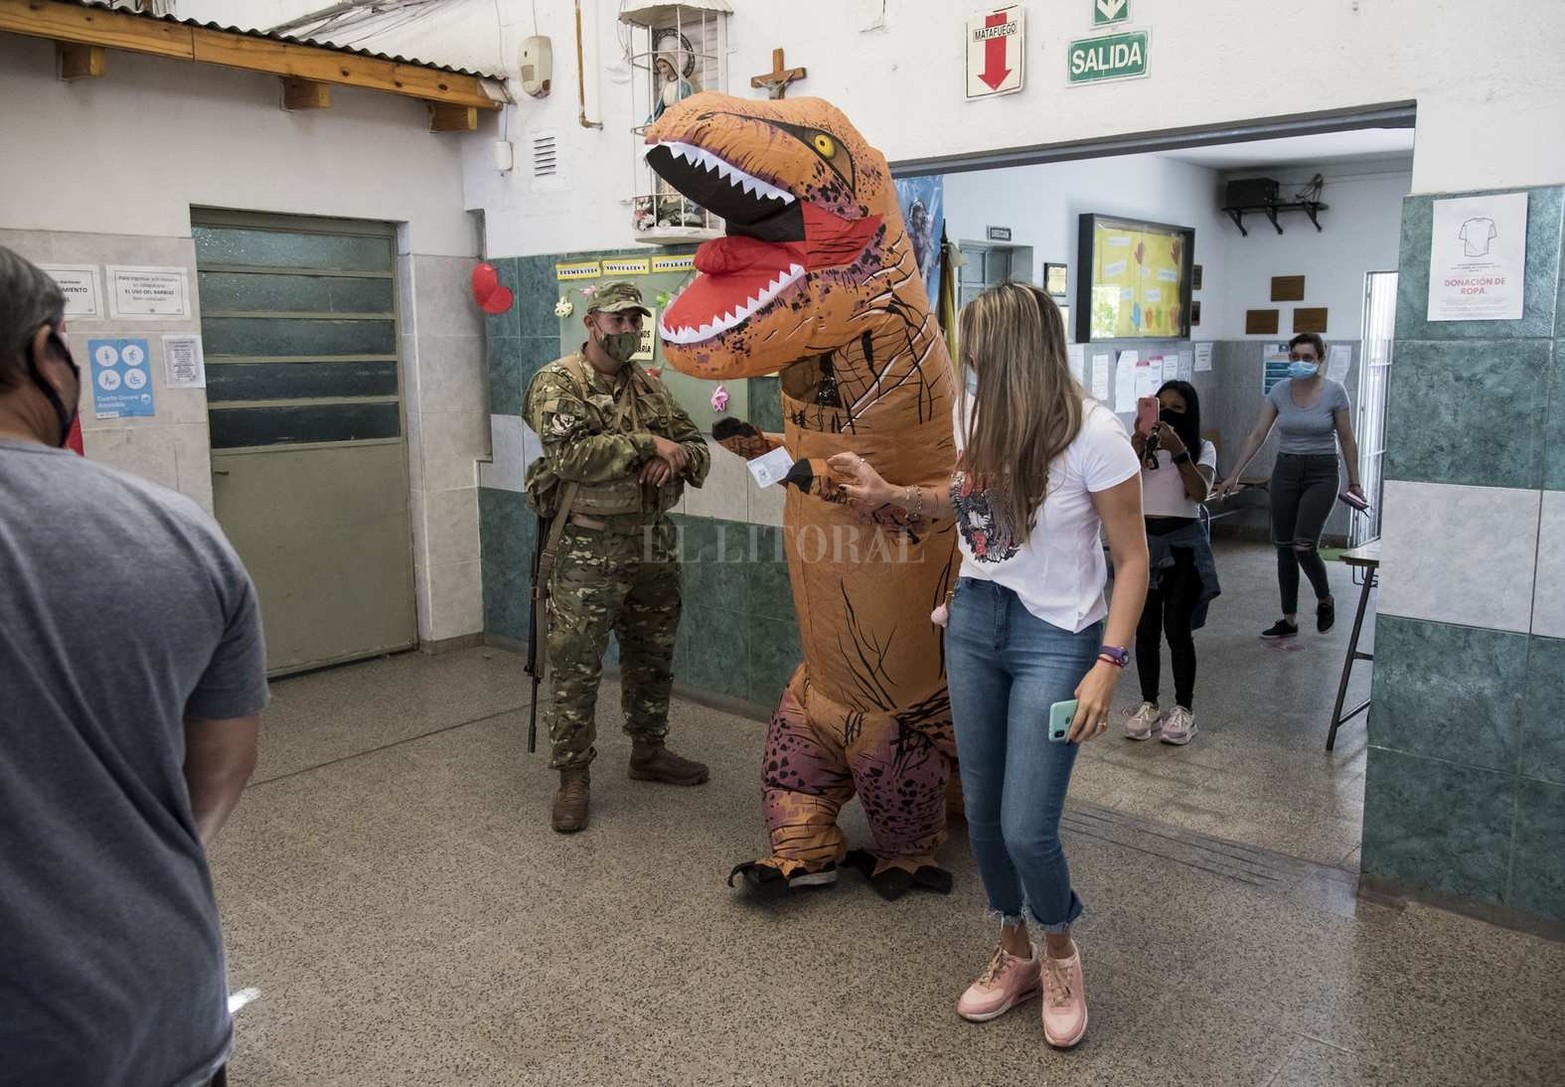 En Rosario, en una de las escuelas que balearon en la madrugada del domingo, apareció un ciudadano vestido de dinosaurio.